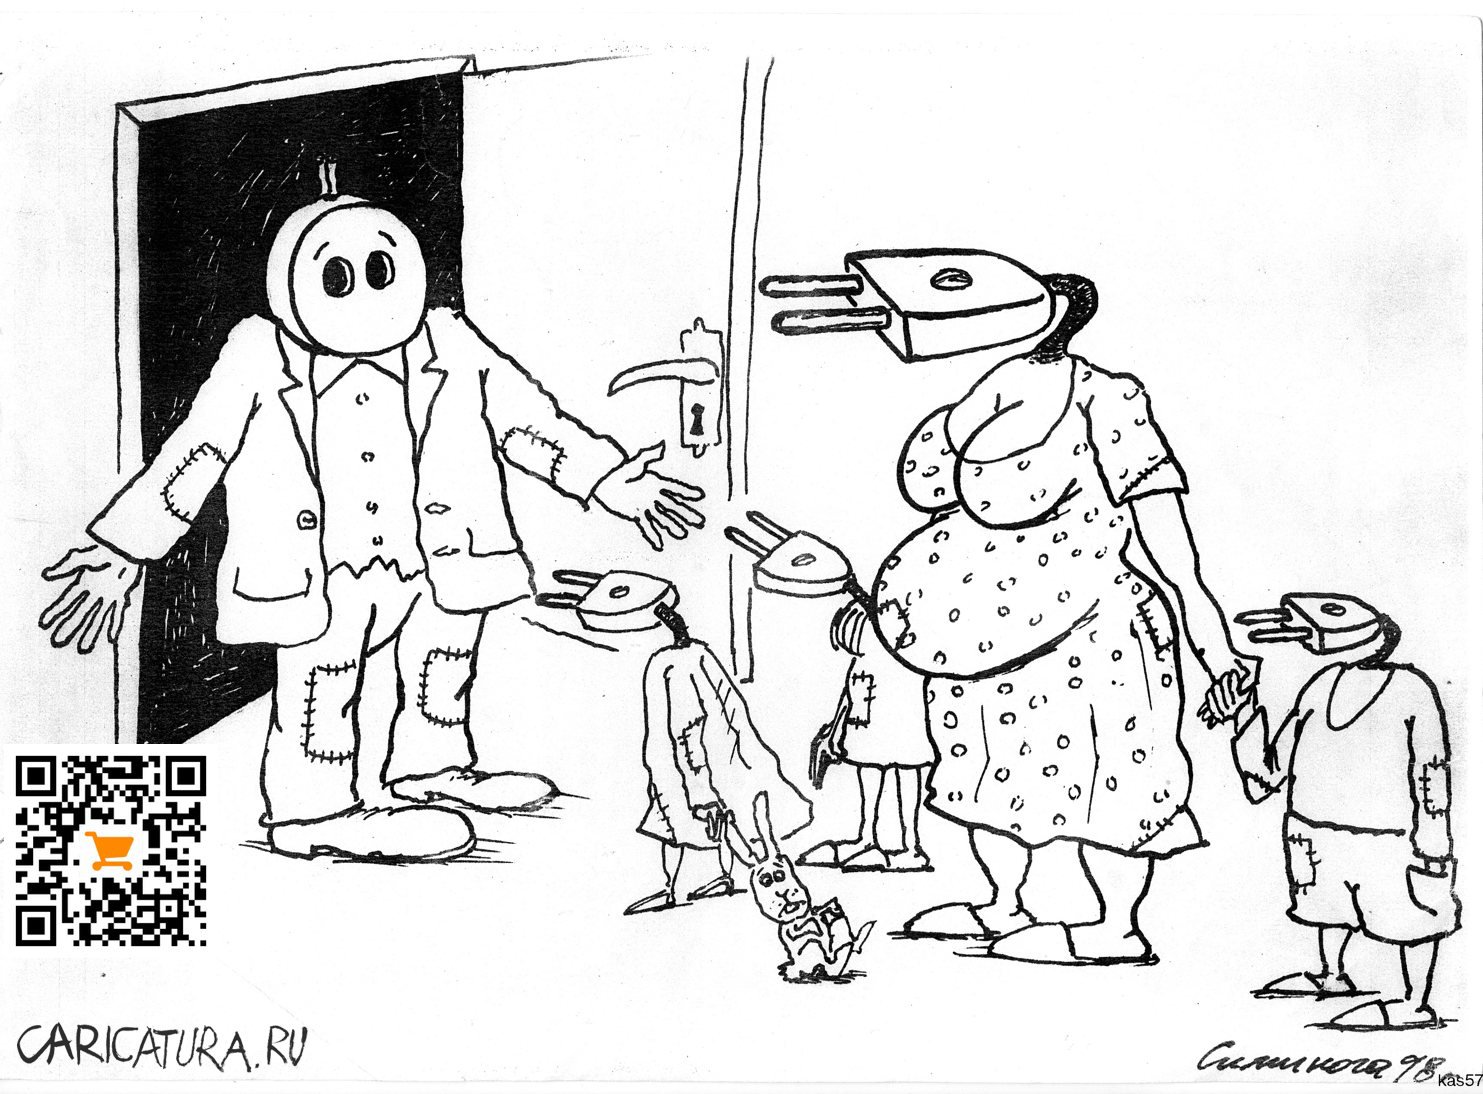 Карикатура "Без слов", Vadim Siminoga